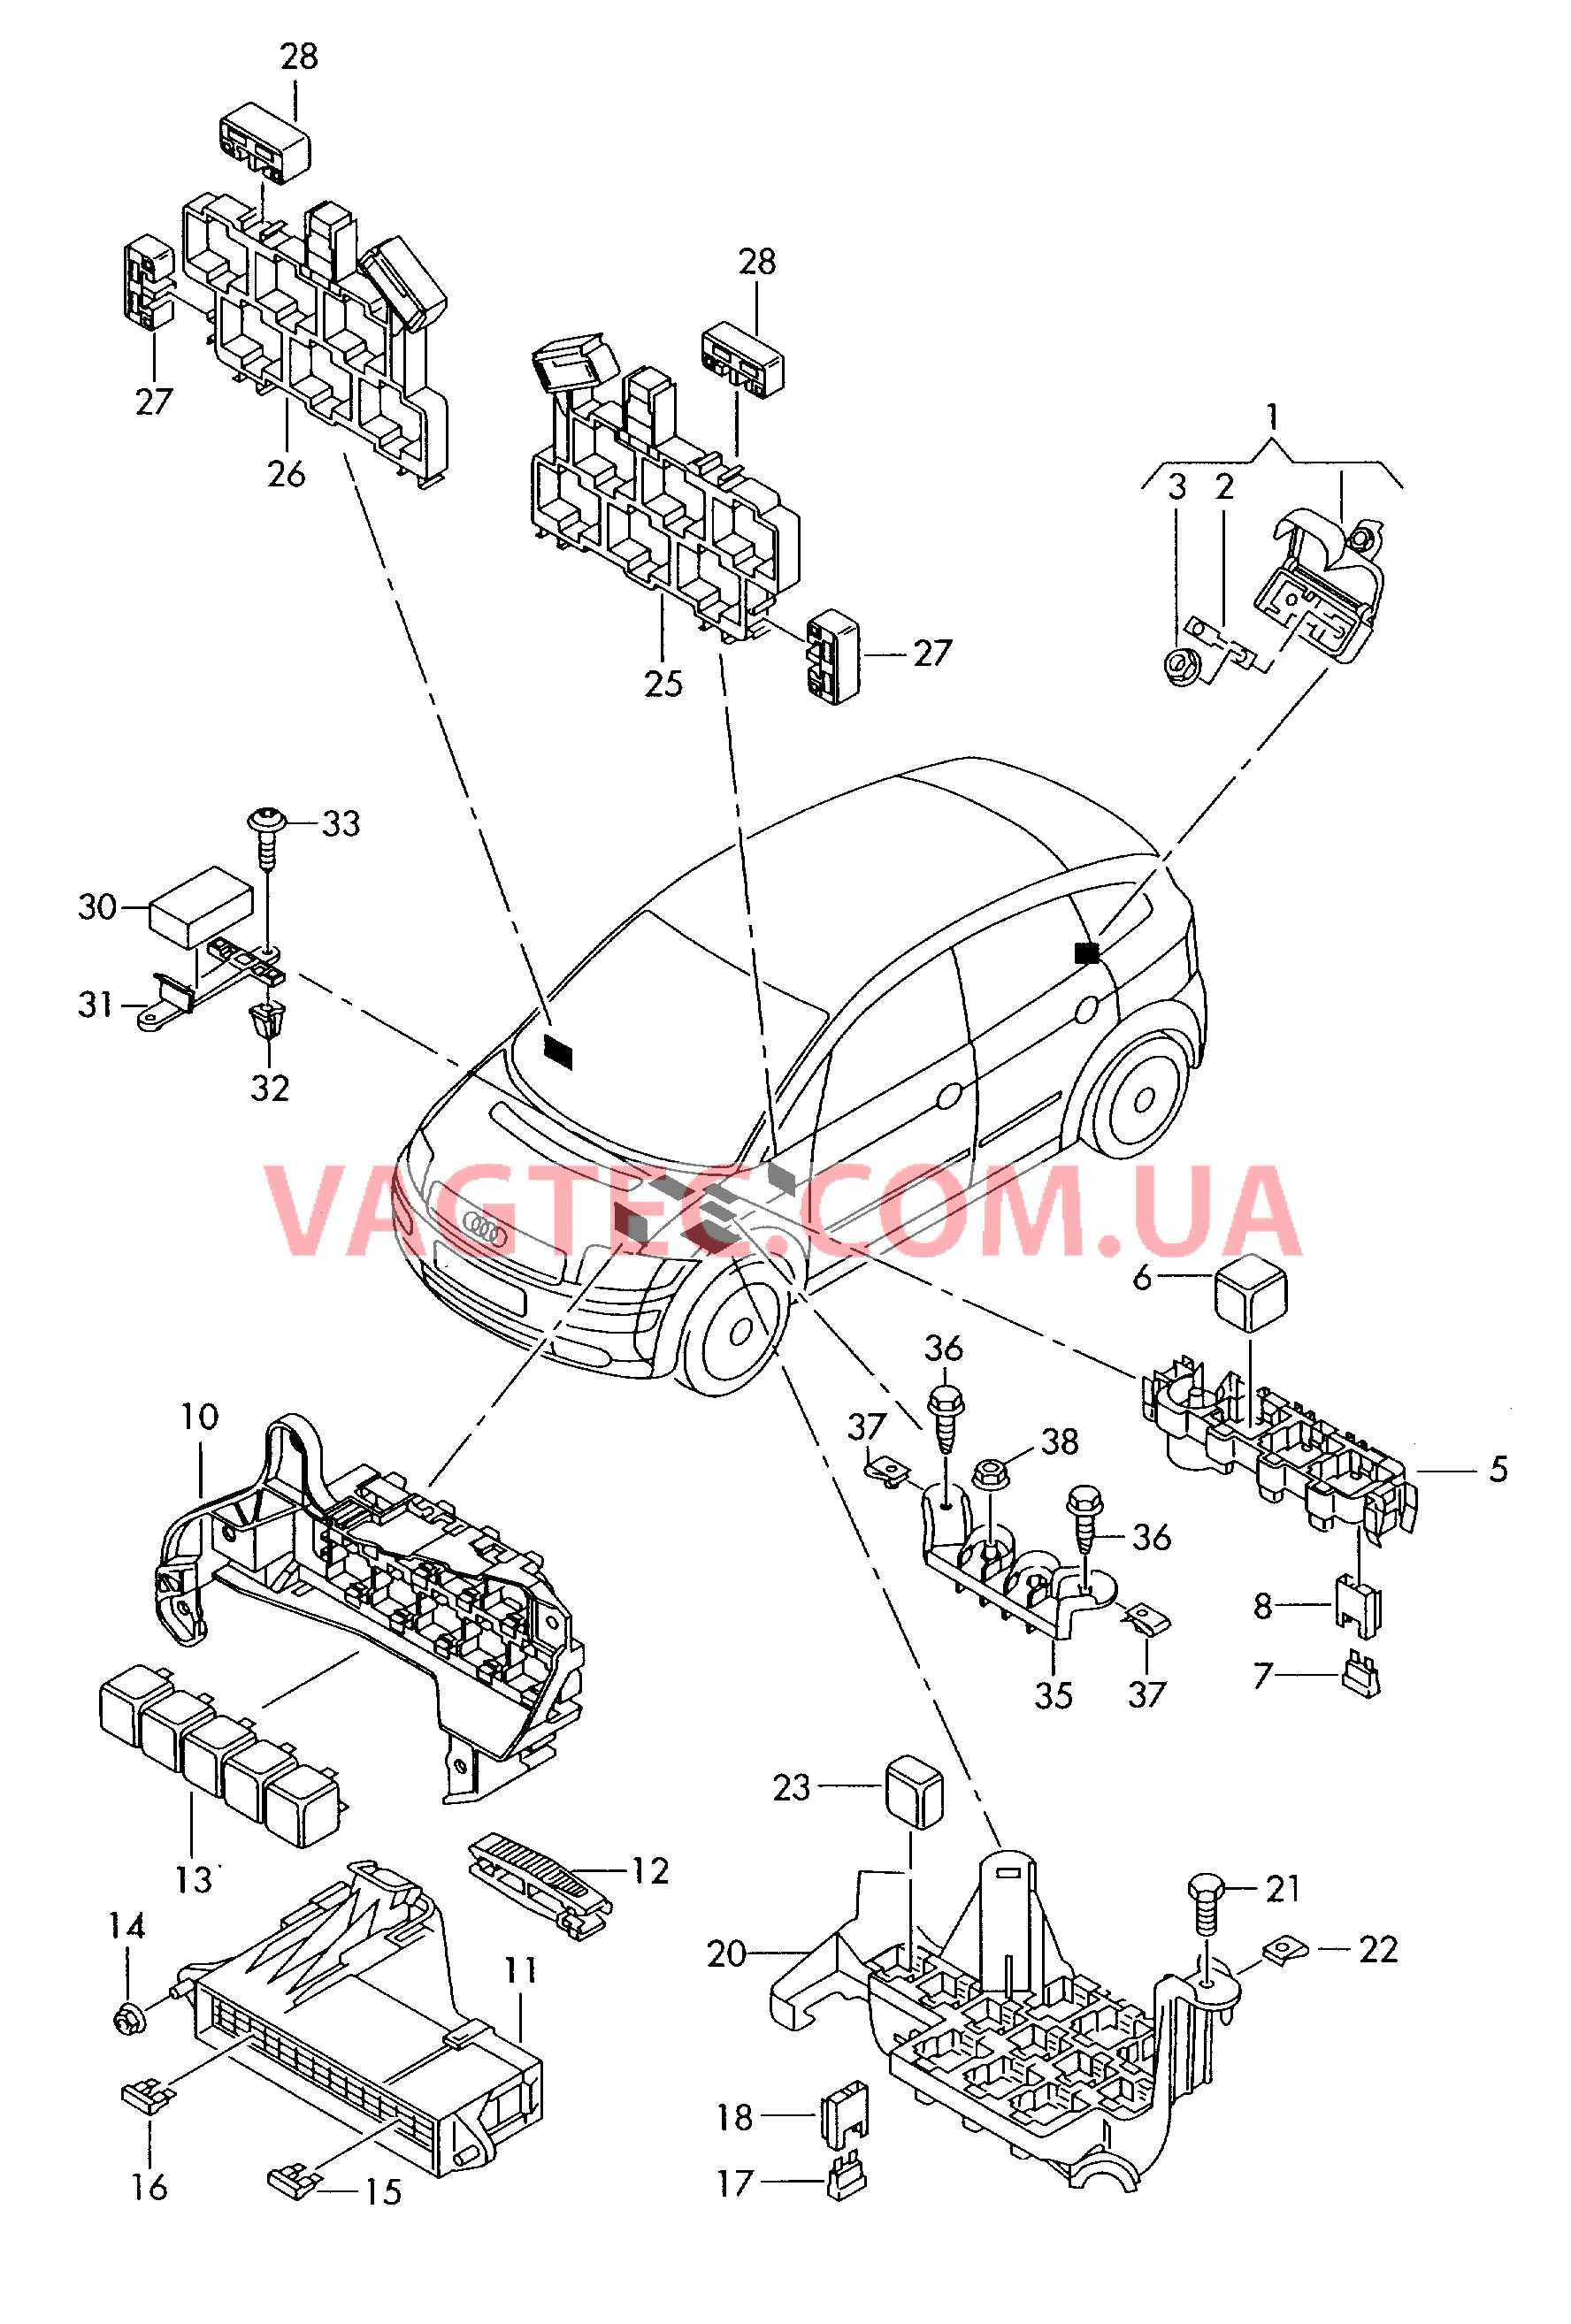 Коммутац. бл., гнездо предохранителя, колодка реле и реле  для AUDI A2 2001